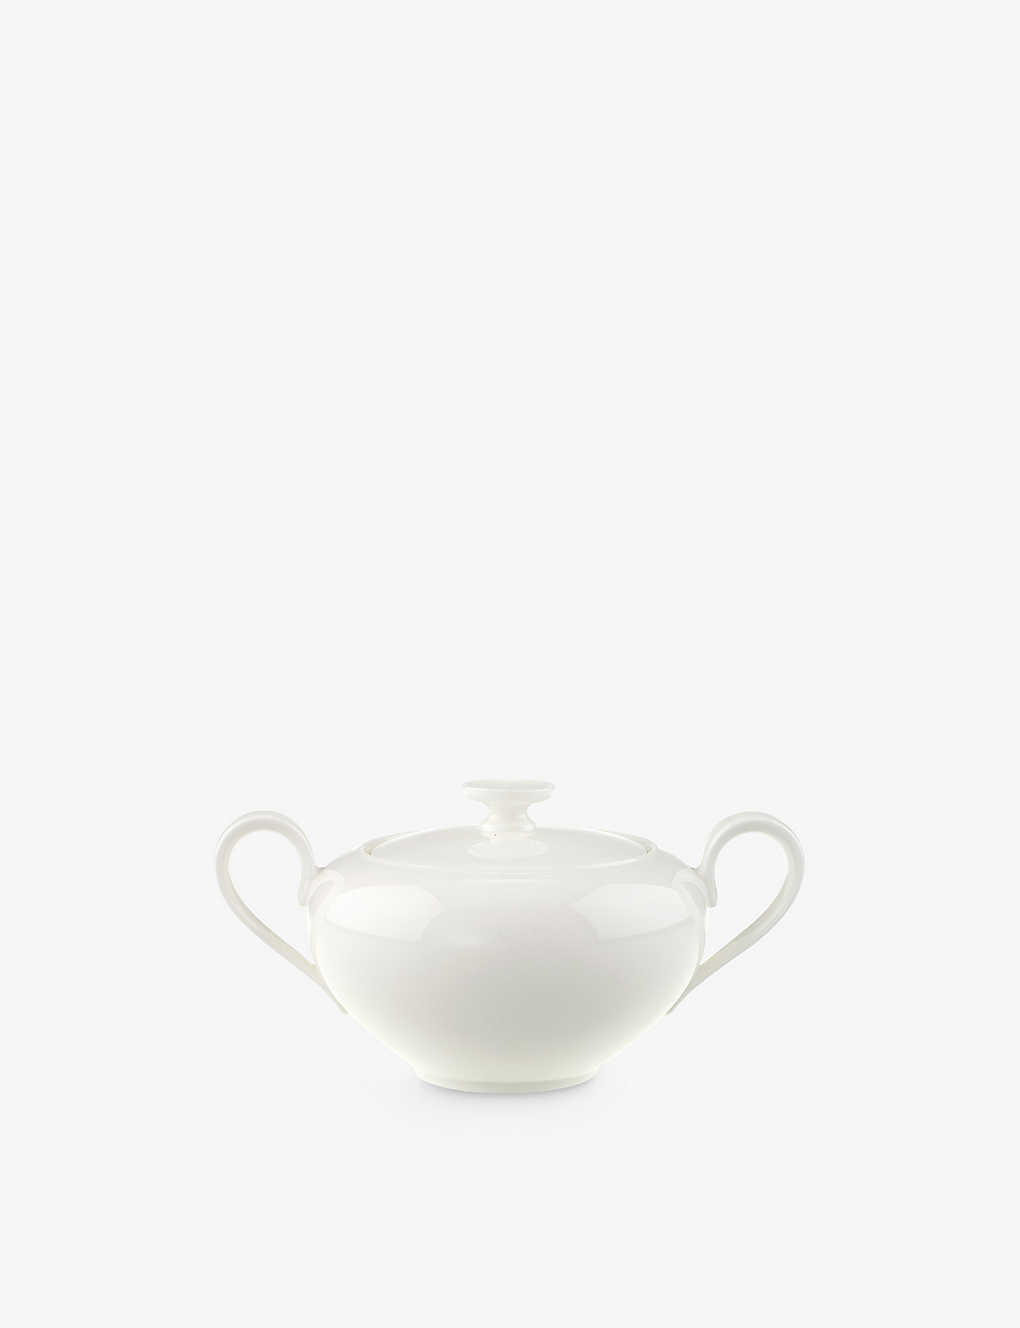 Villeroy & Boch Anmut Porcelain Sugar Bowl